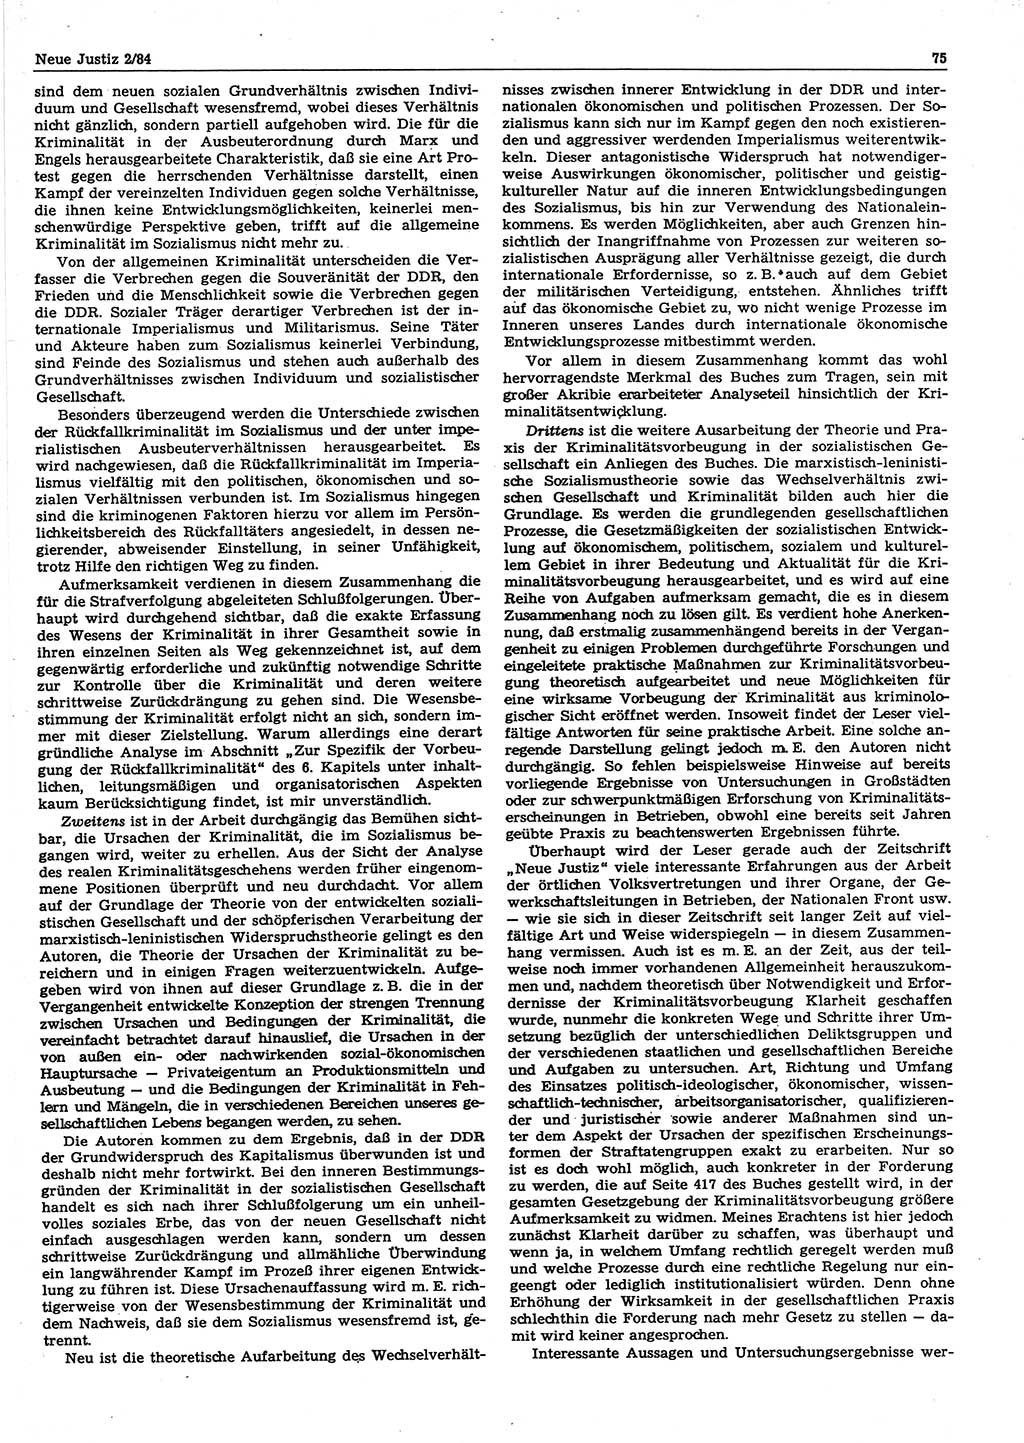 Neue Justiz (NJ), Zeitschrift für sozialistisches Recht und Gesetzlichkeit [Deutsche Demokratische Republik (DDR)], 38. Jahrgang 1984, Seite 75 (NJ DDR 1984, S. 75)